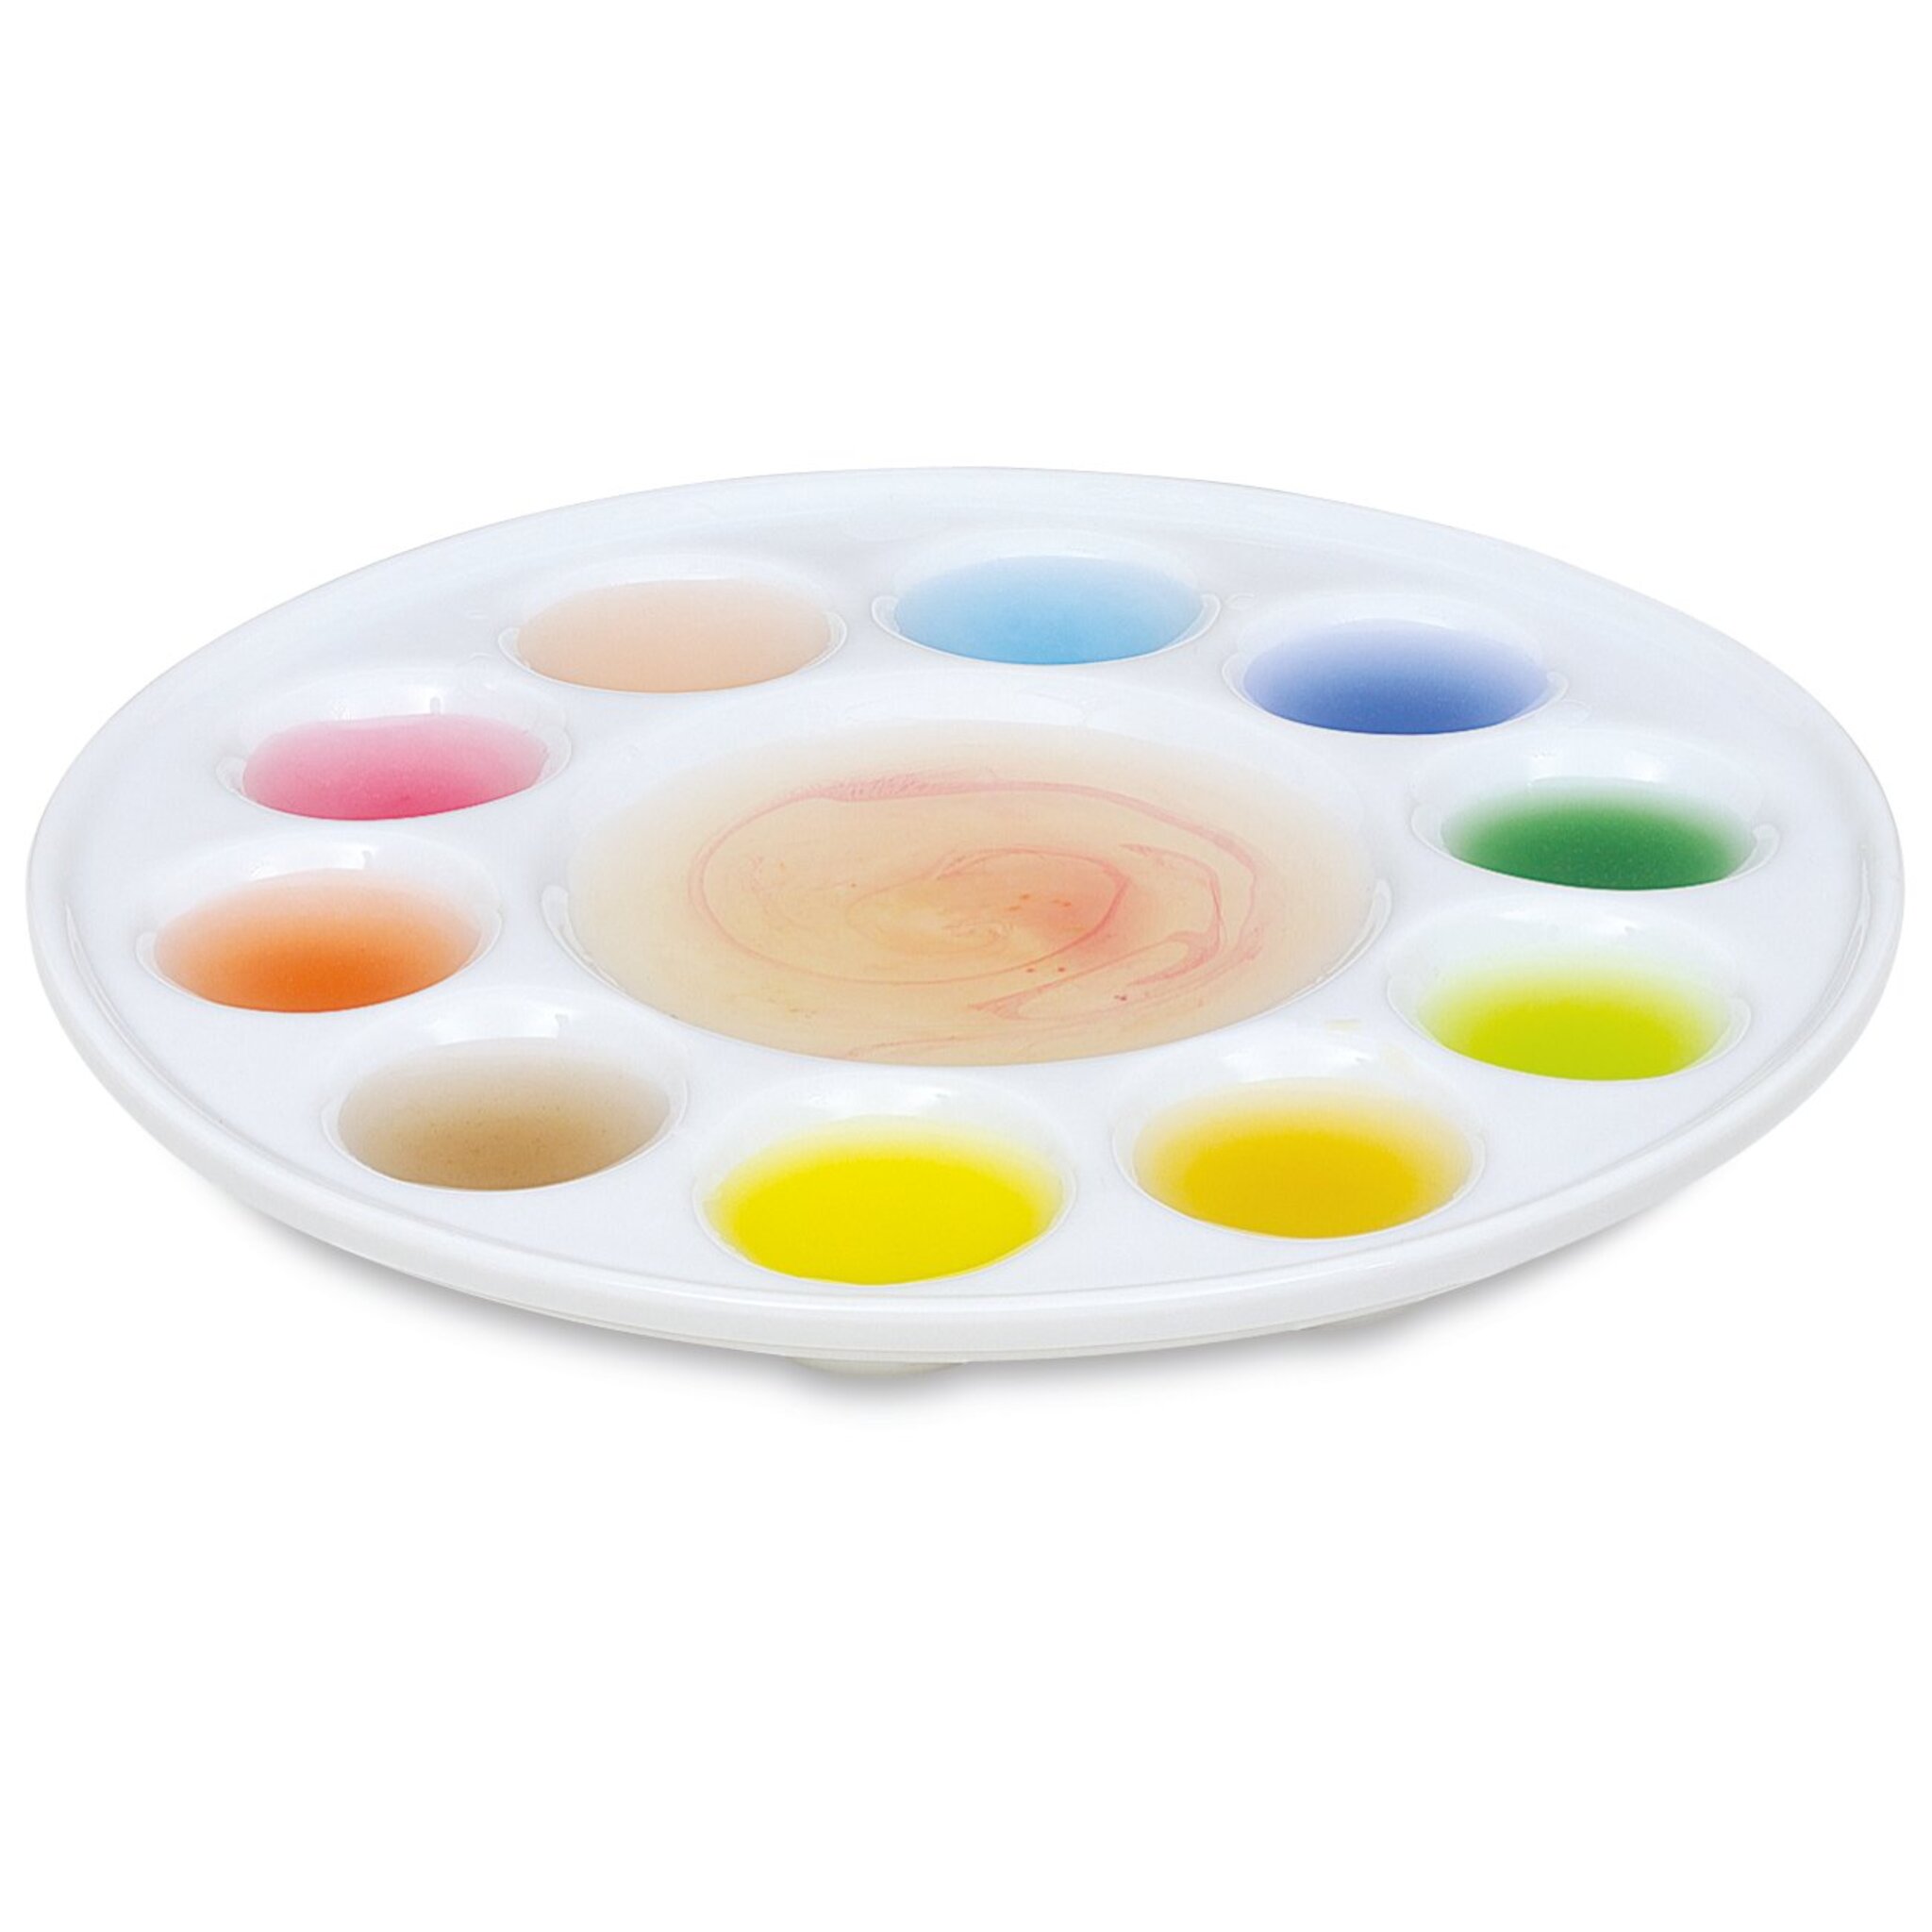 10pcs Round Porcelain Watercolor Paint Palette,Round Ceramic Artist Paint Palette Container Dish for Painting